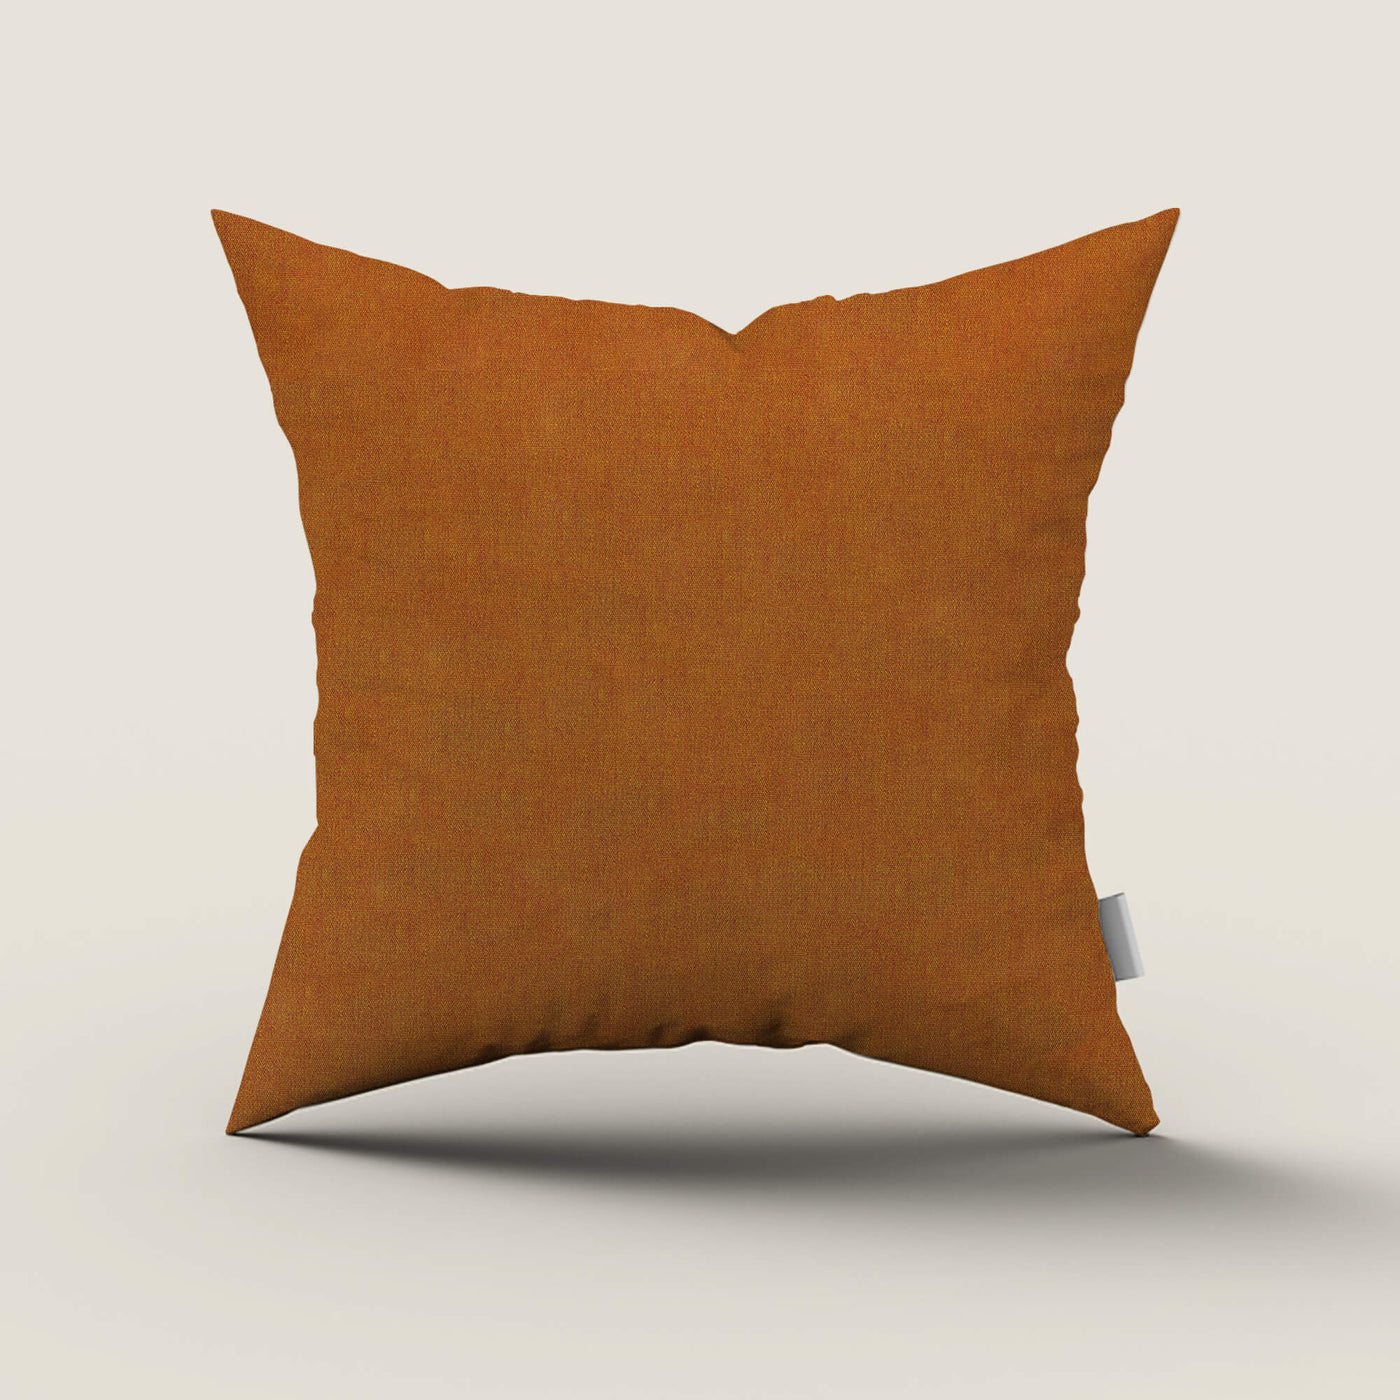 PENGI Waterproof Outdoor Throw Pillows 1 Pcs - Mix